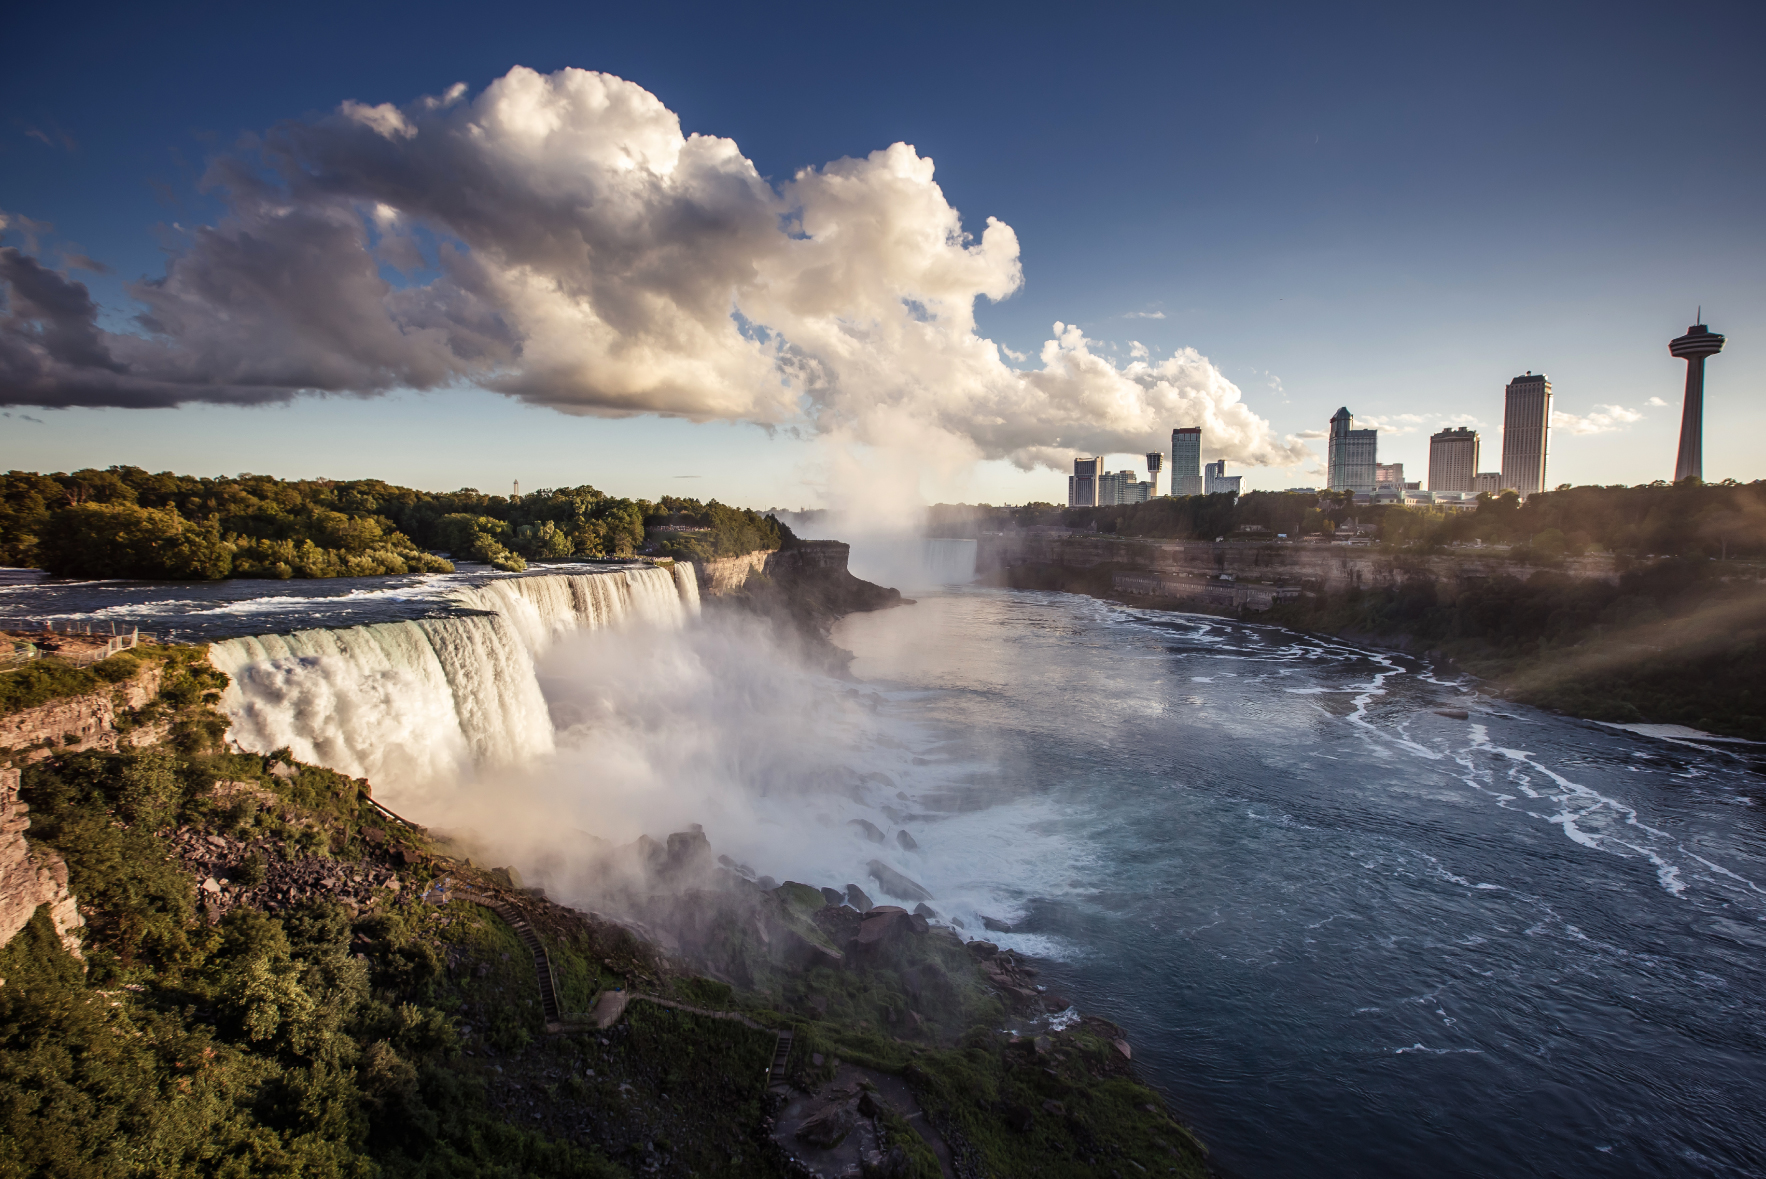 Niagara falls in Ontario